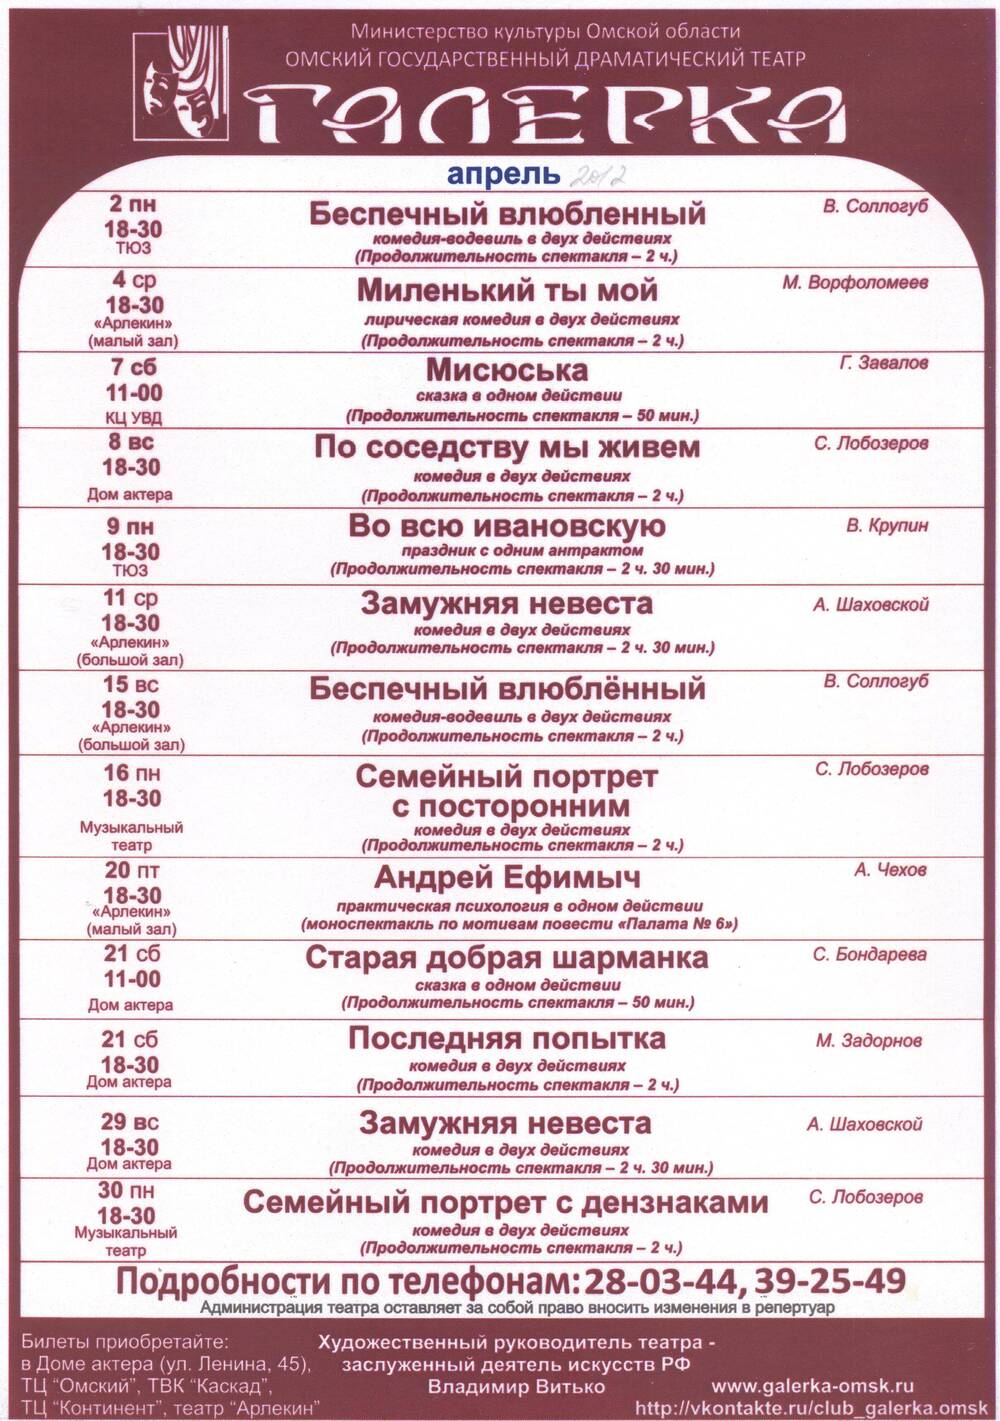 Репертуарный лист на апрель 2012 г. Омский драматический театр Галёрка.